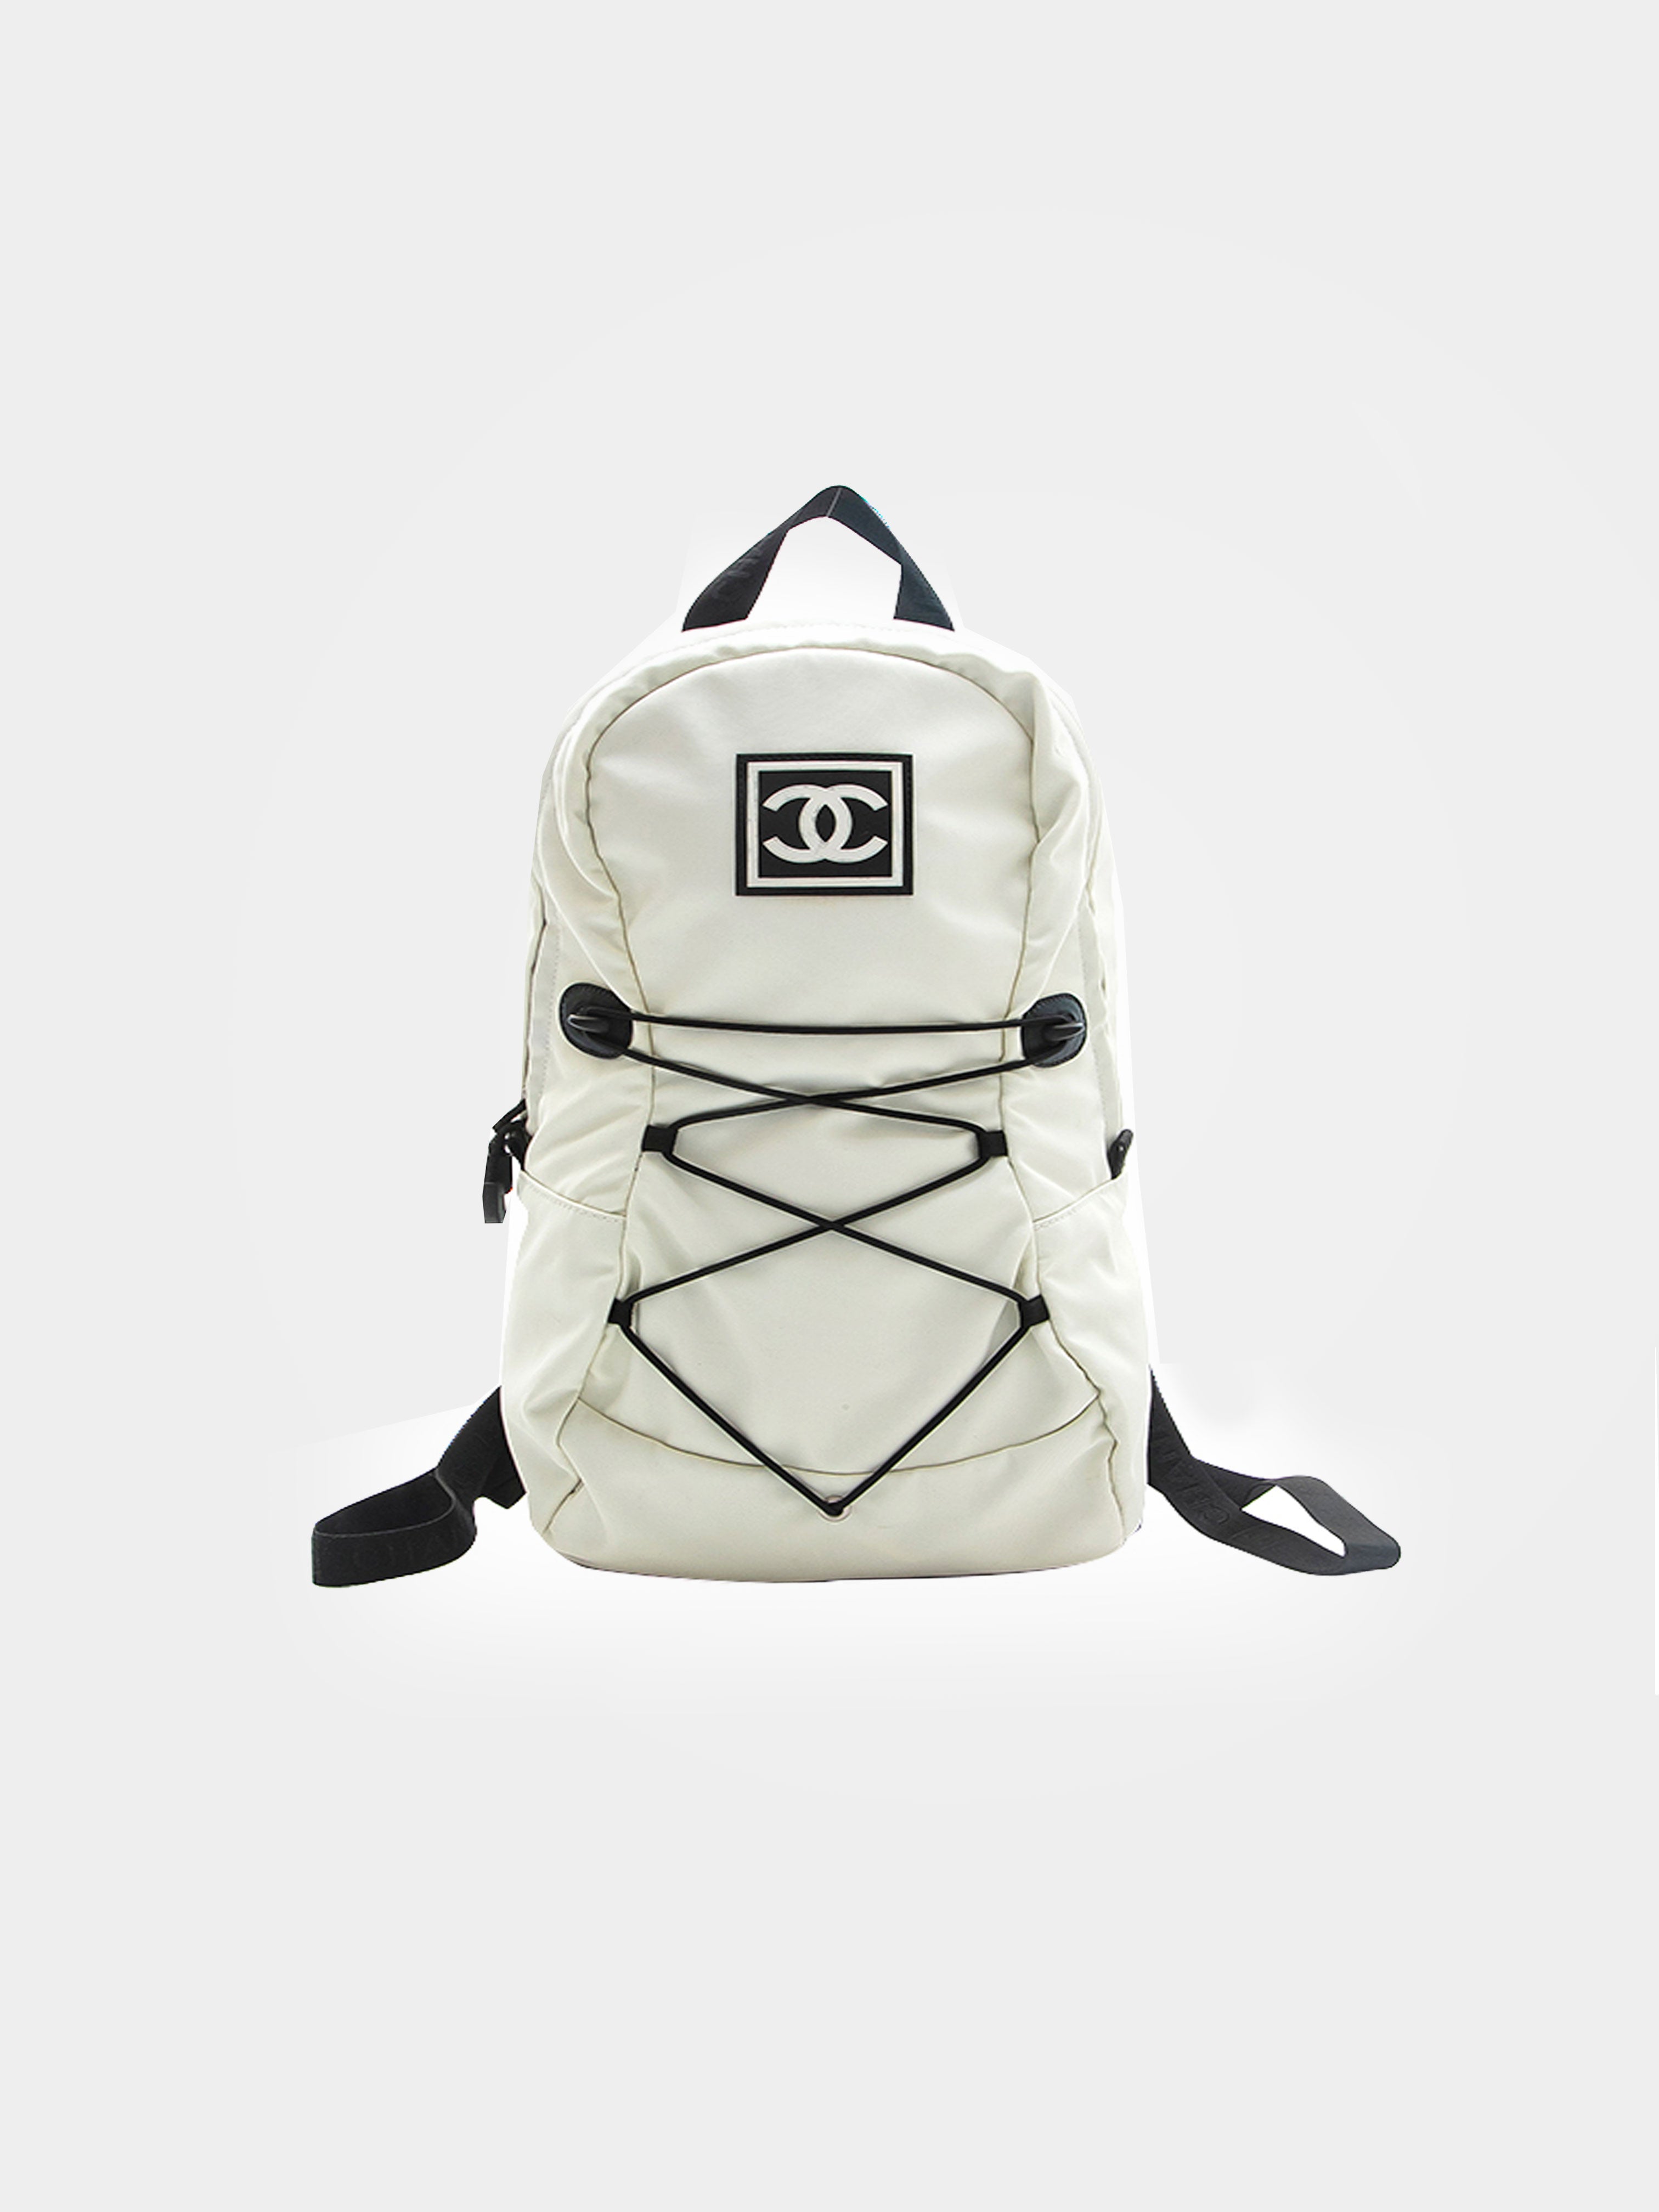 Den aktuelle Shah skolde Chanel 2000s Sports White Nylon Backpack · INTO